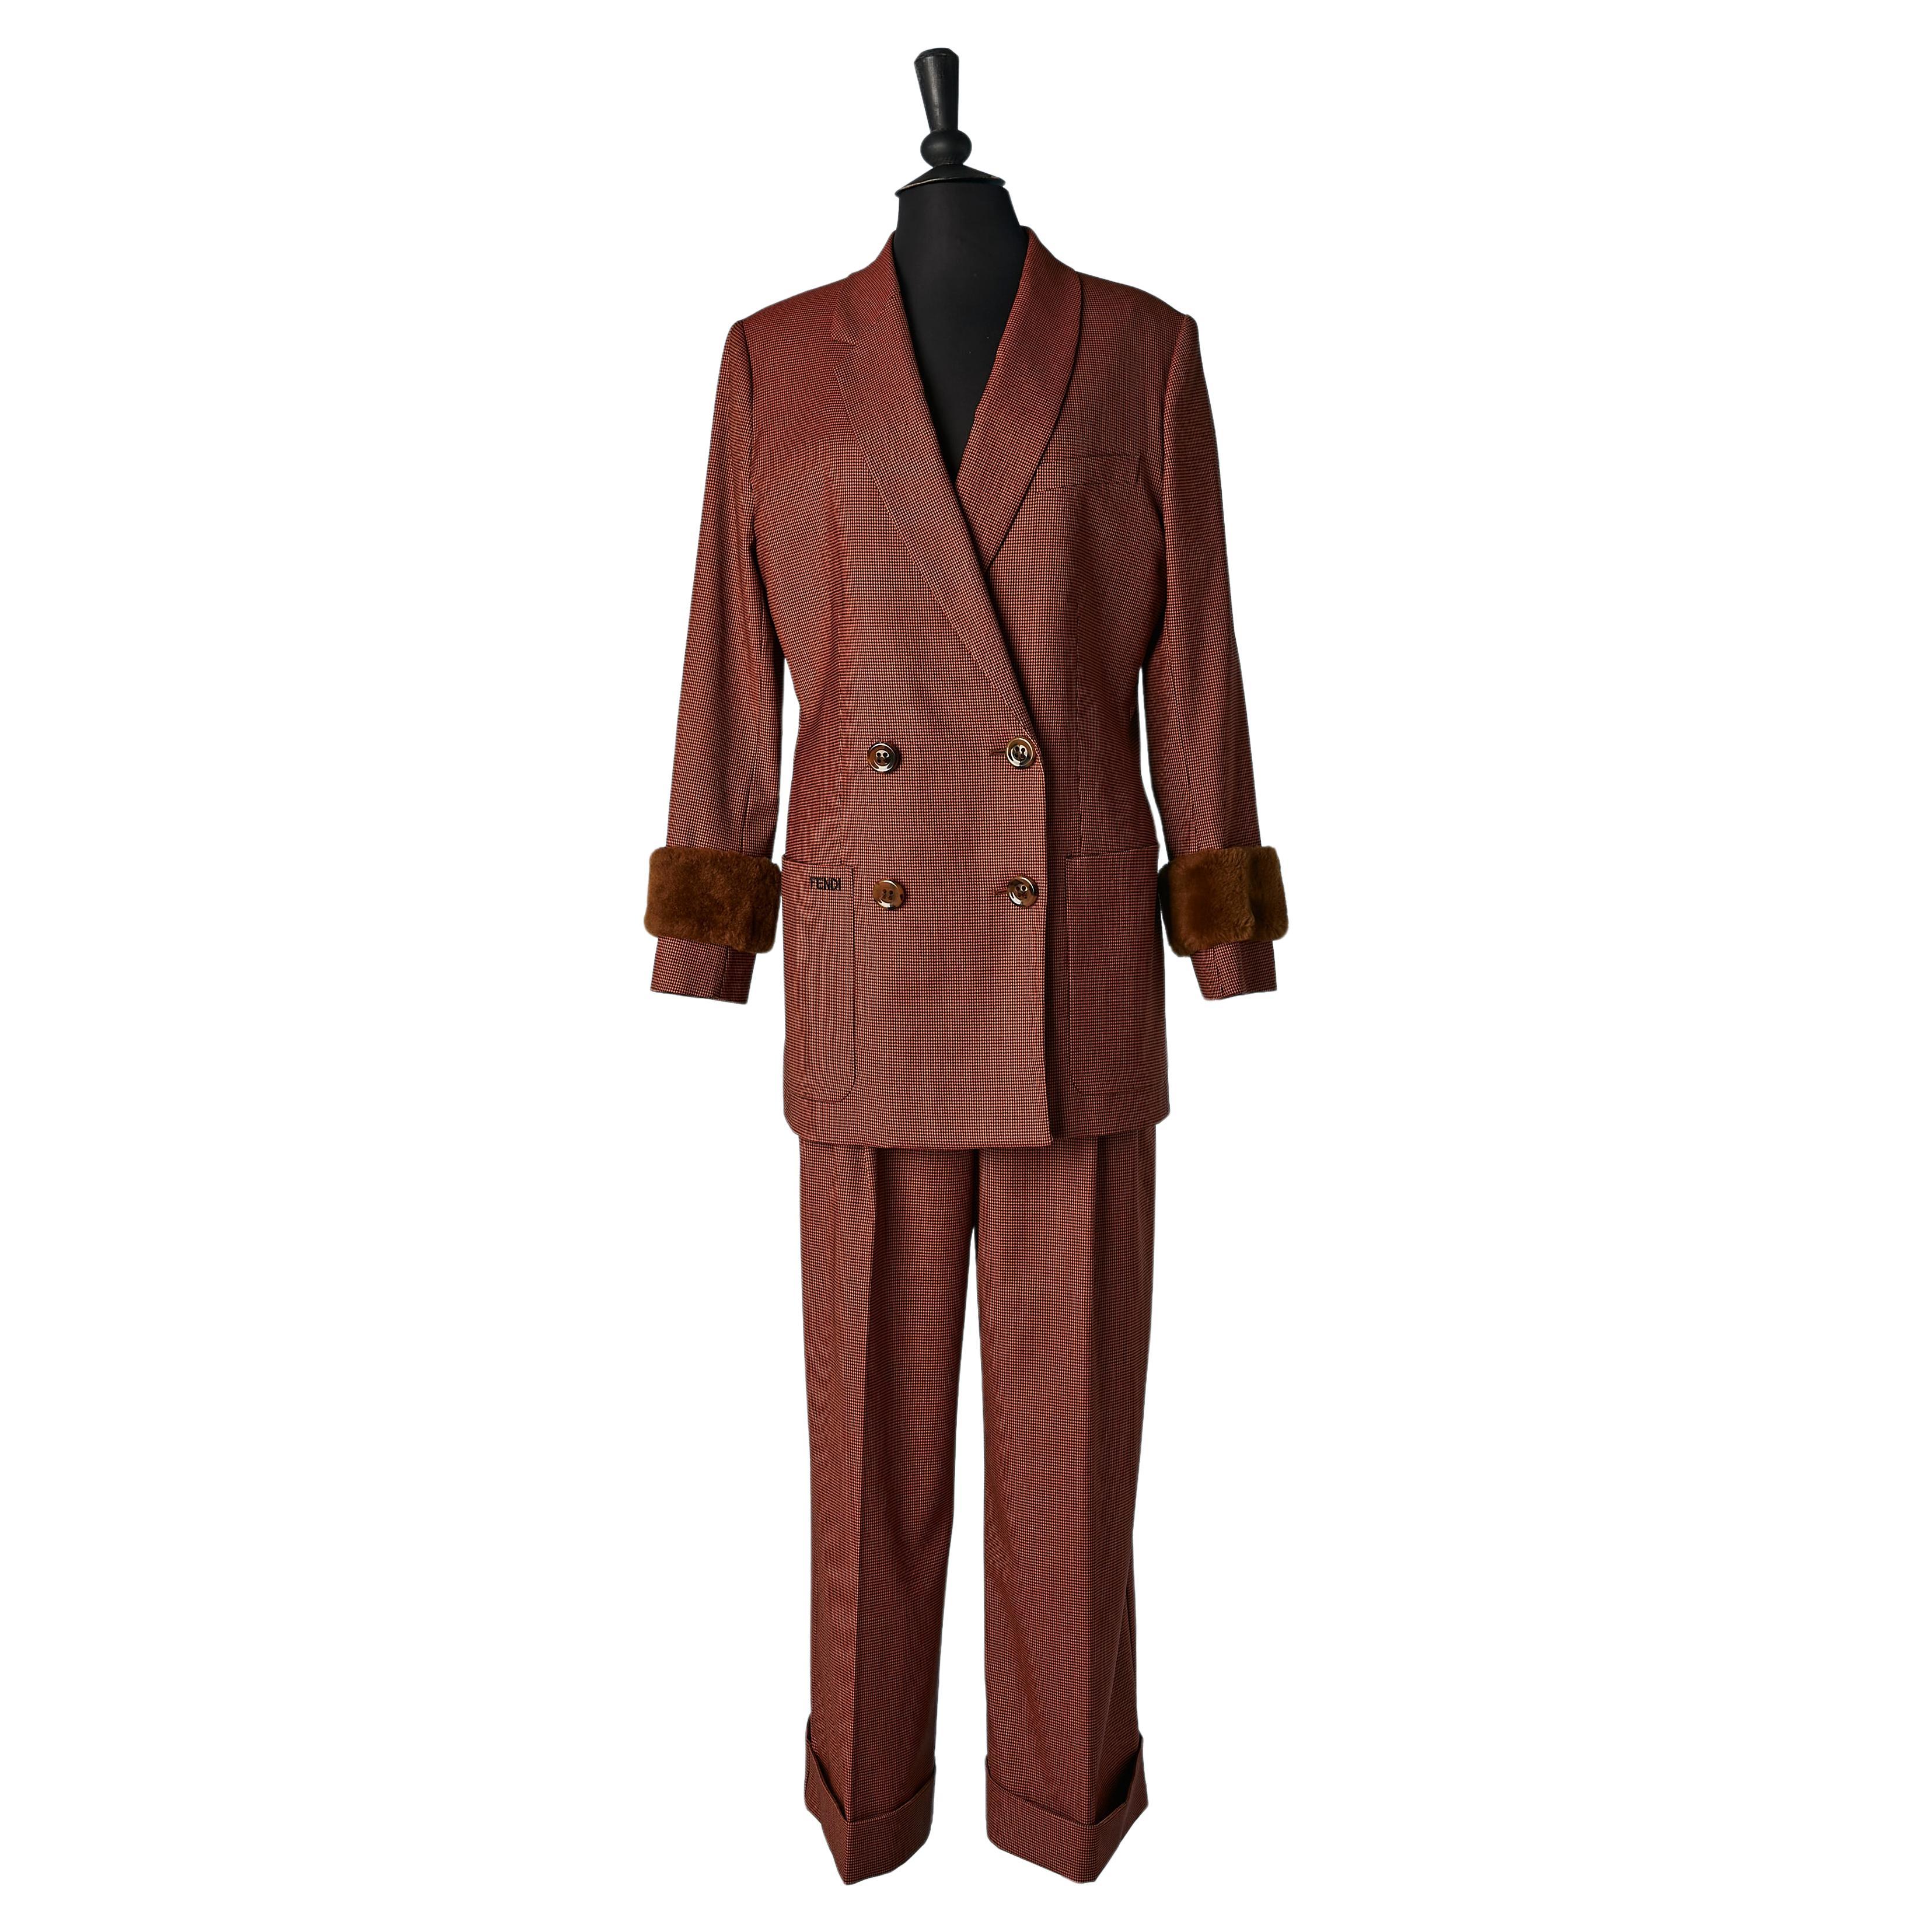 Brown and black mini Pied de poule pattern trouser-suit with fur cuffs FENDI  For Sale